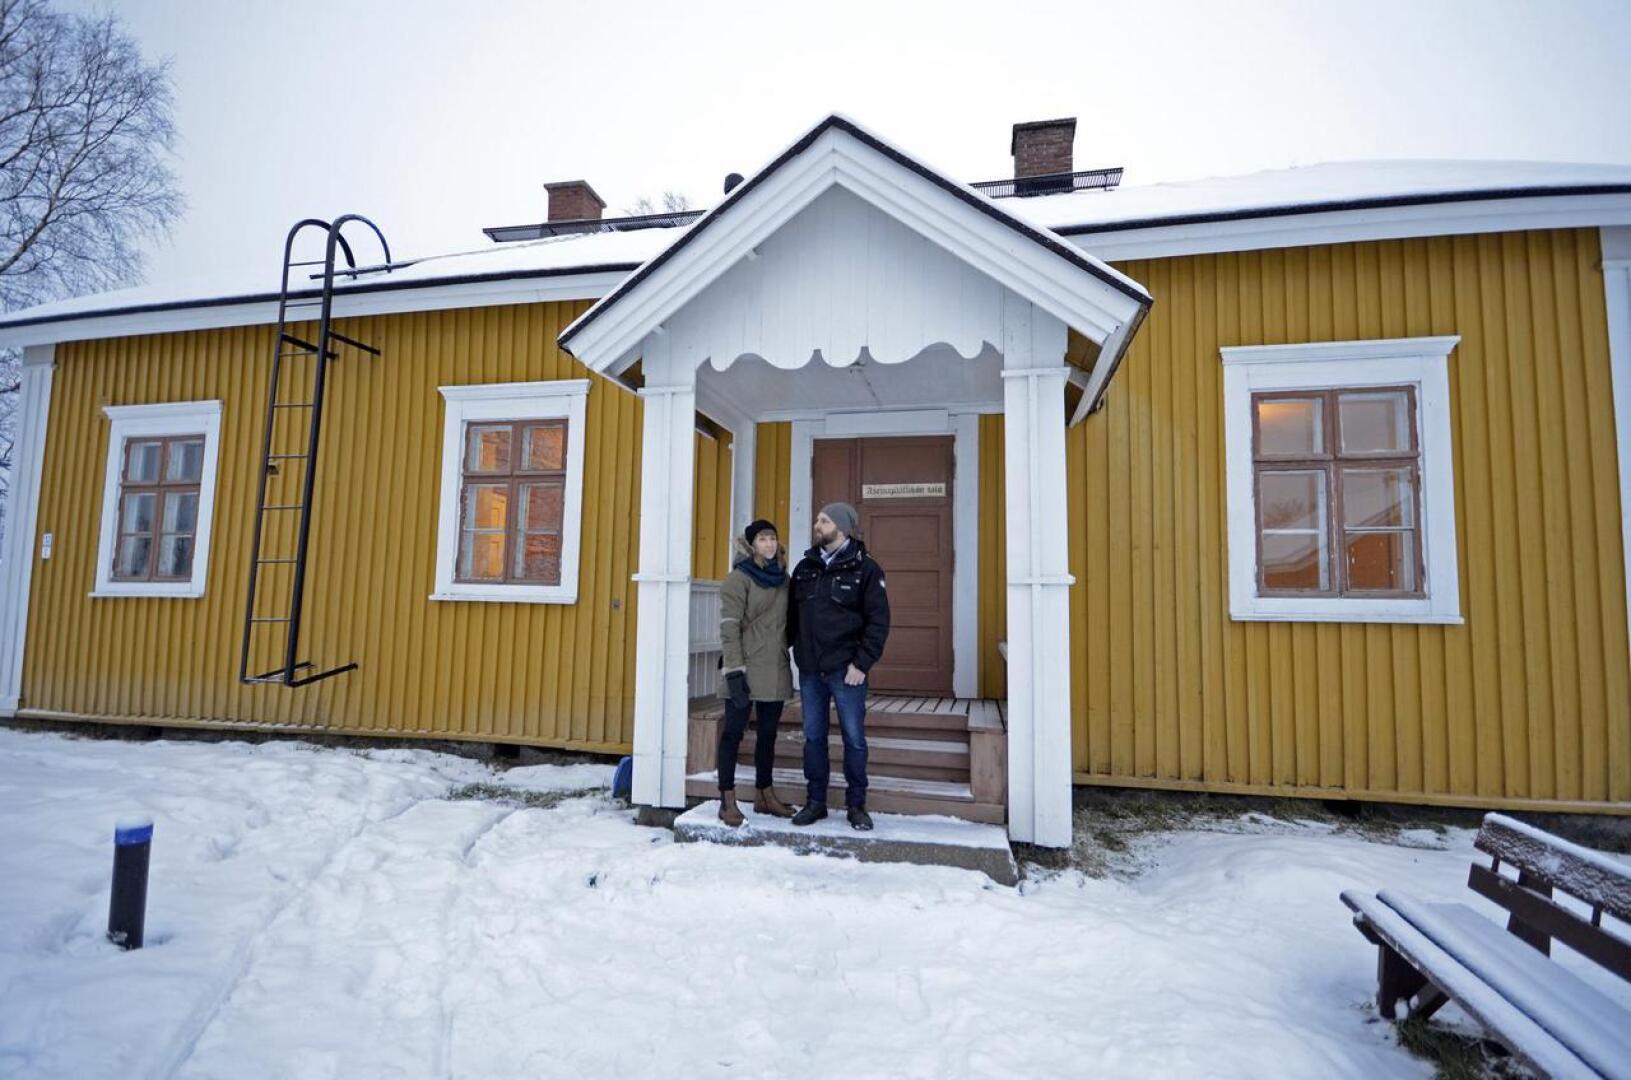 Uudet "asemapäälliköt" Annukka ja Jouni Salmela jatkavat vuokralaisina Asemapäällikön talon sisätilojen kunnostusta. Kaupungin omistuksessa on vuosia sitten hanketöinä kunnostettu talon katto ja vuonna 2016 talkoilla palautettiin  okrankeltainen seinäpinta.